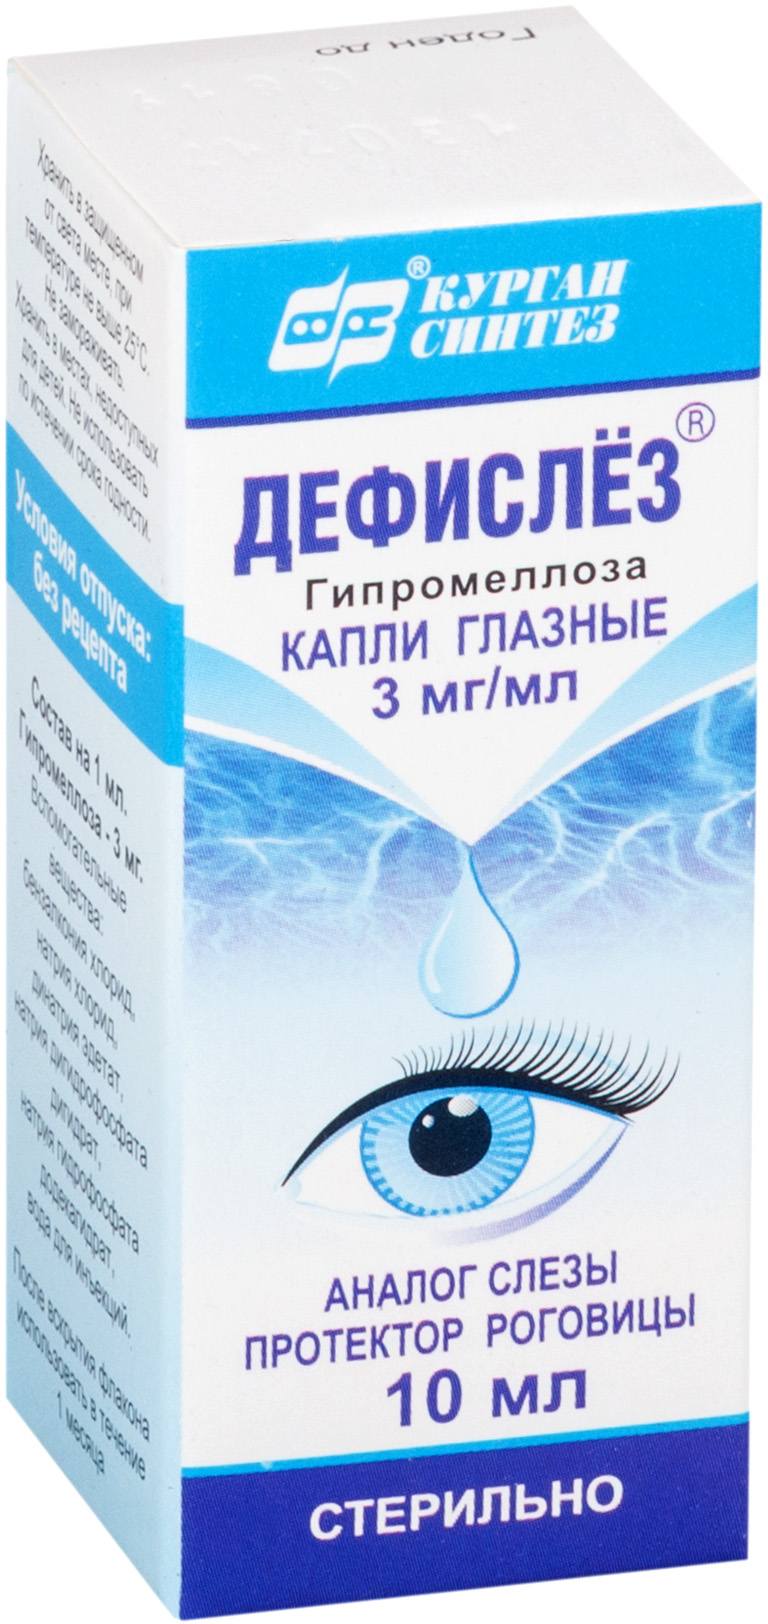 Дефислез, капли глазные 3 мг/мл, 10 мл визин алерджи капли глазные 0 05% 4мл